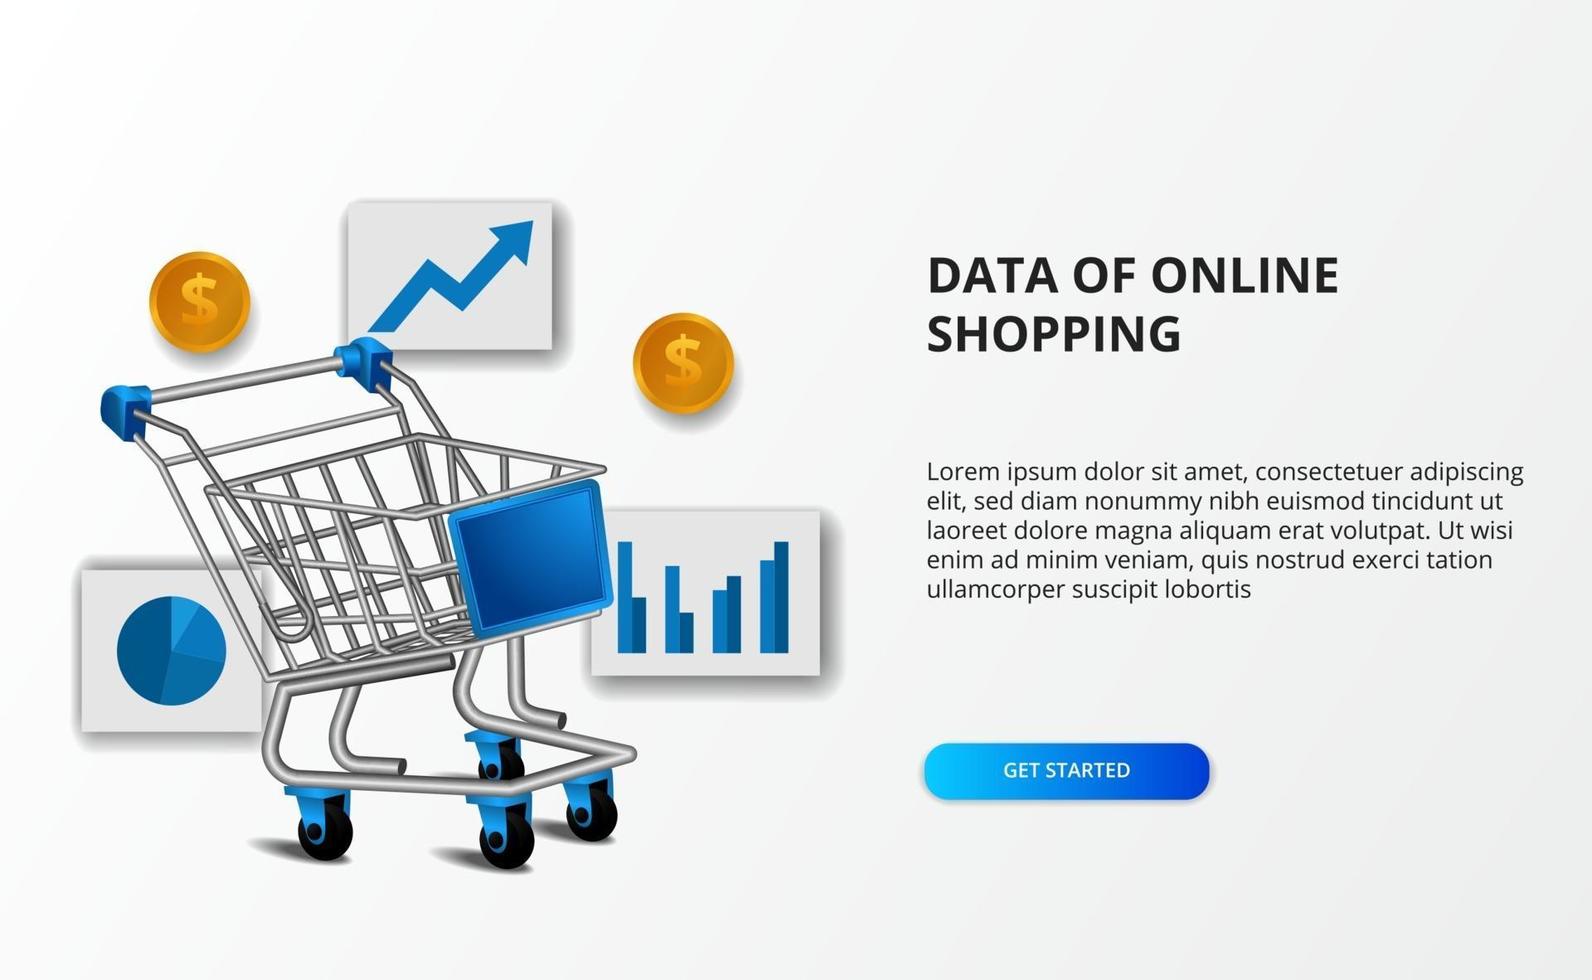 dados de e-commerce de compras online. ilustração do carrinho de compras com gráfico de dados e dinheiro dourado. vetor